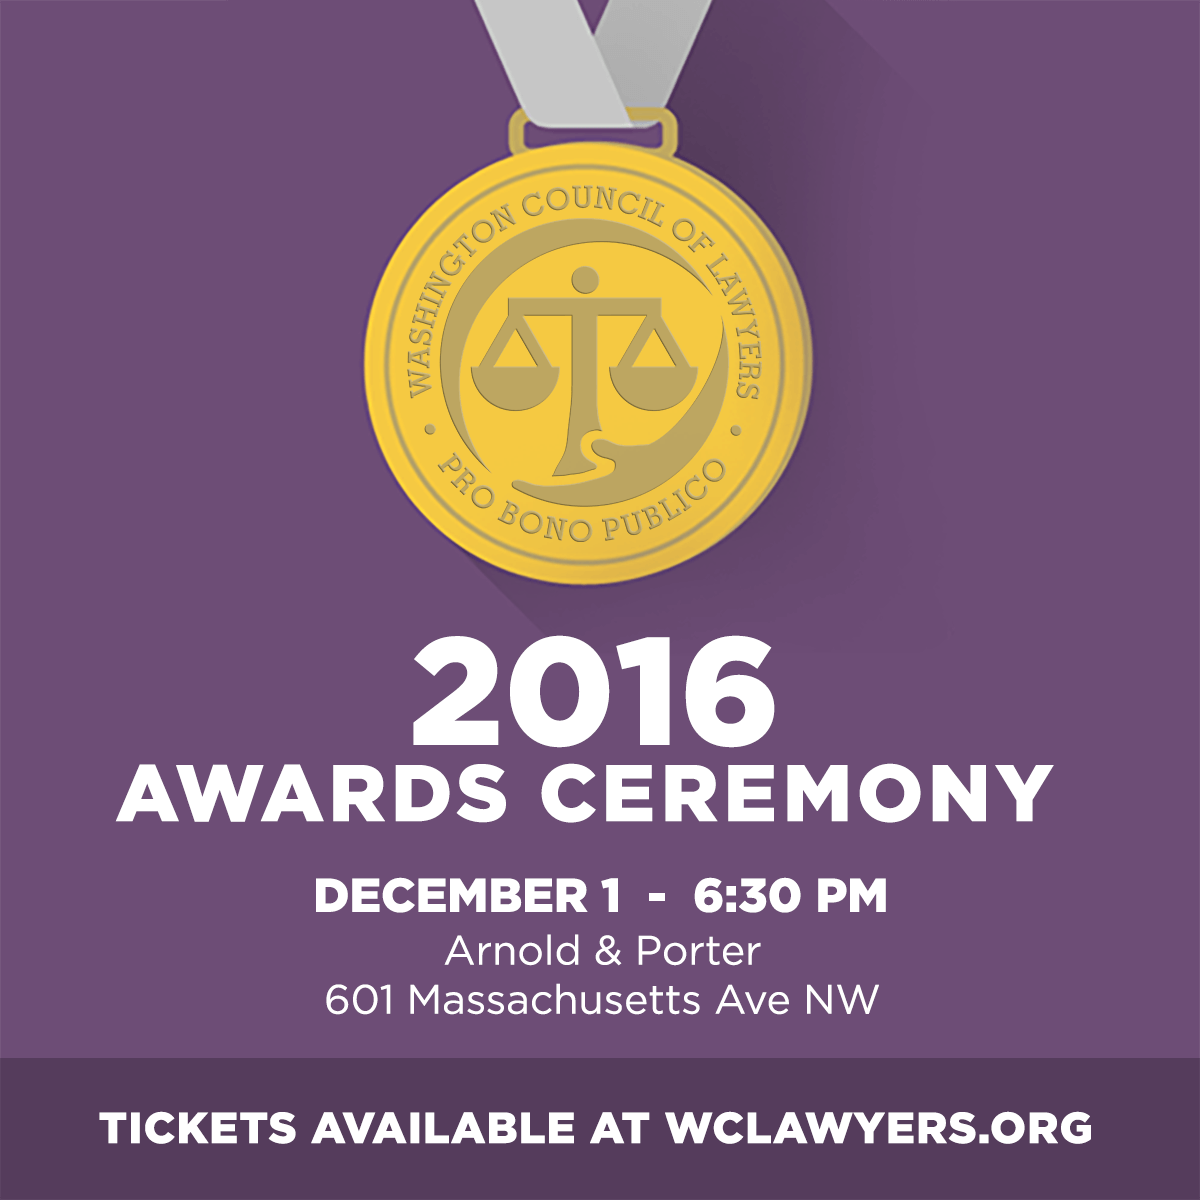 Graphic: 2016 Awards Ceremony